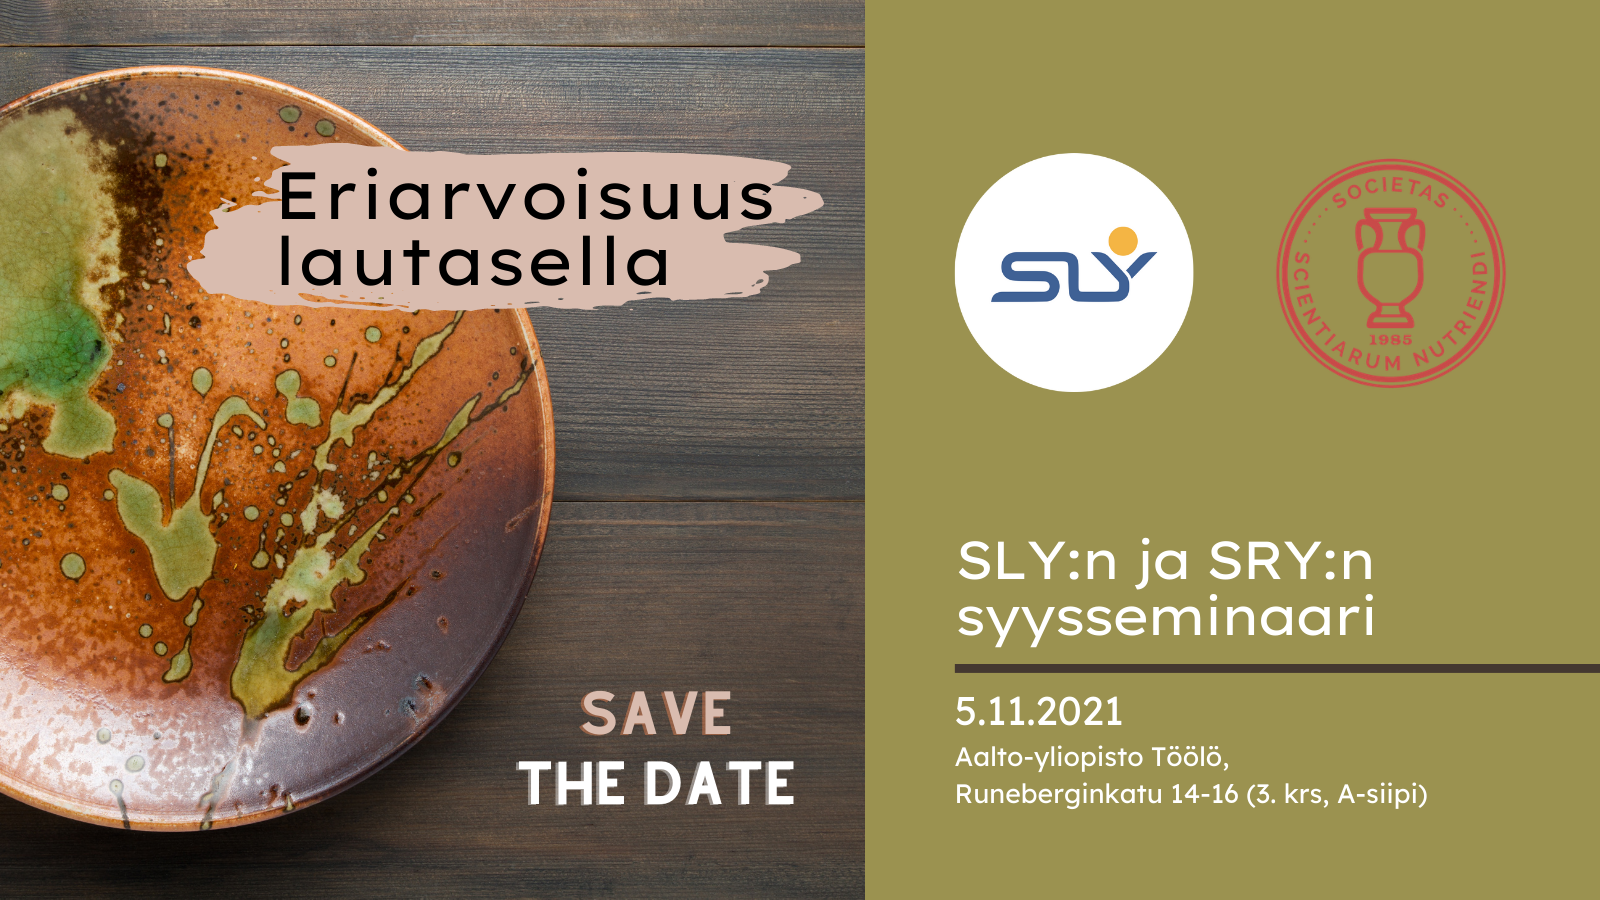 SLY:n ja SRY:n syysseminaari: Eriarvoisuus lautasella, 5.11.2021